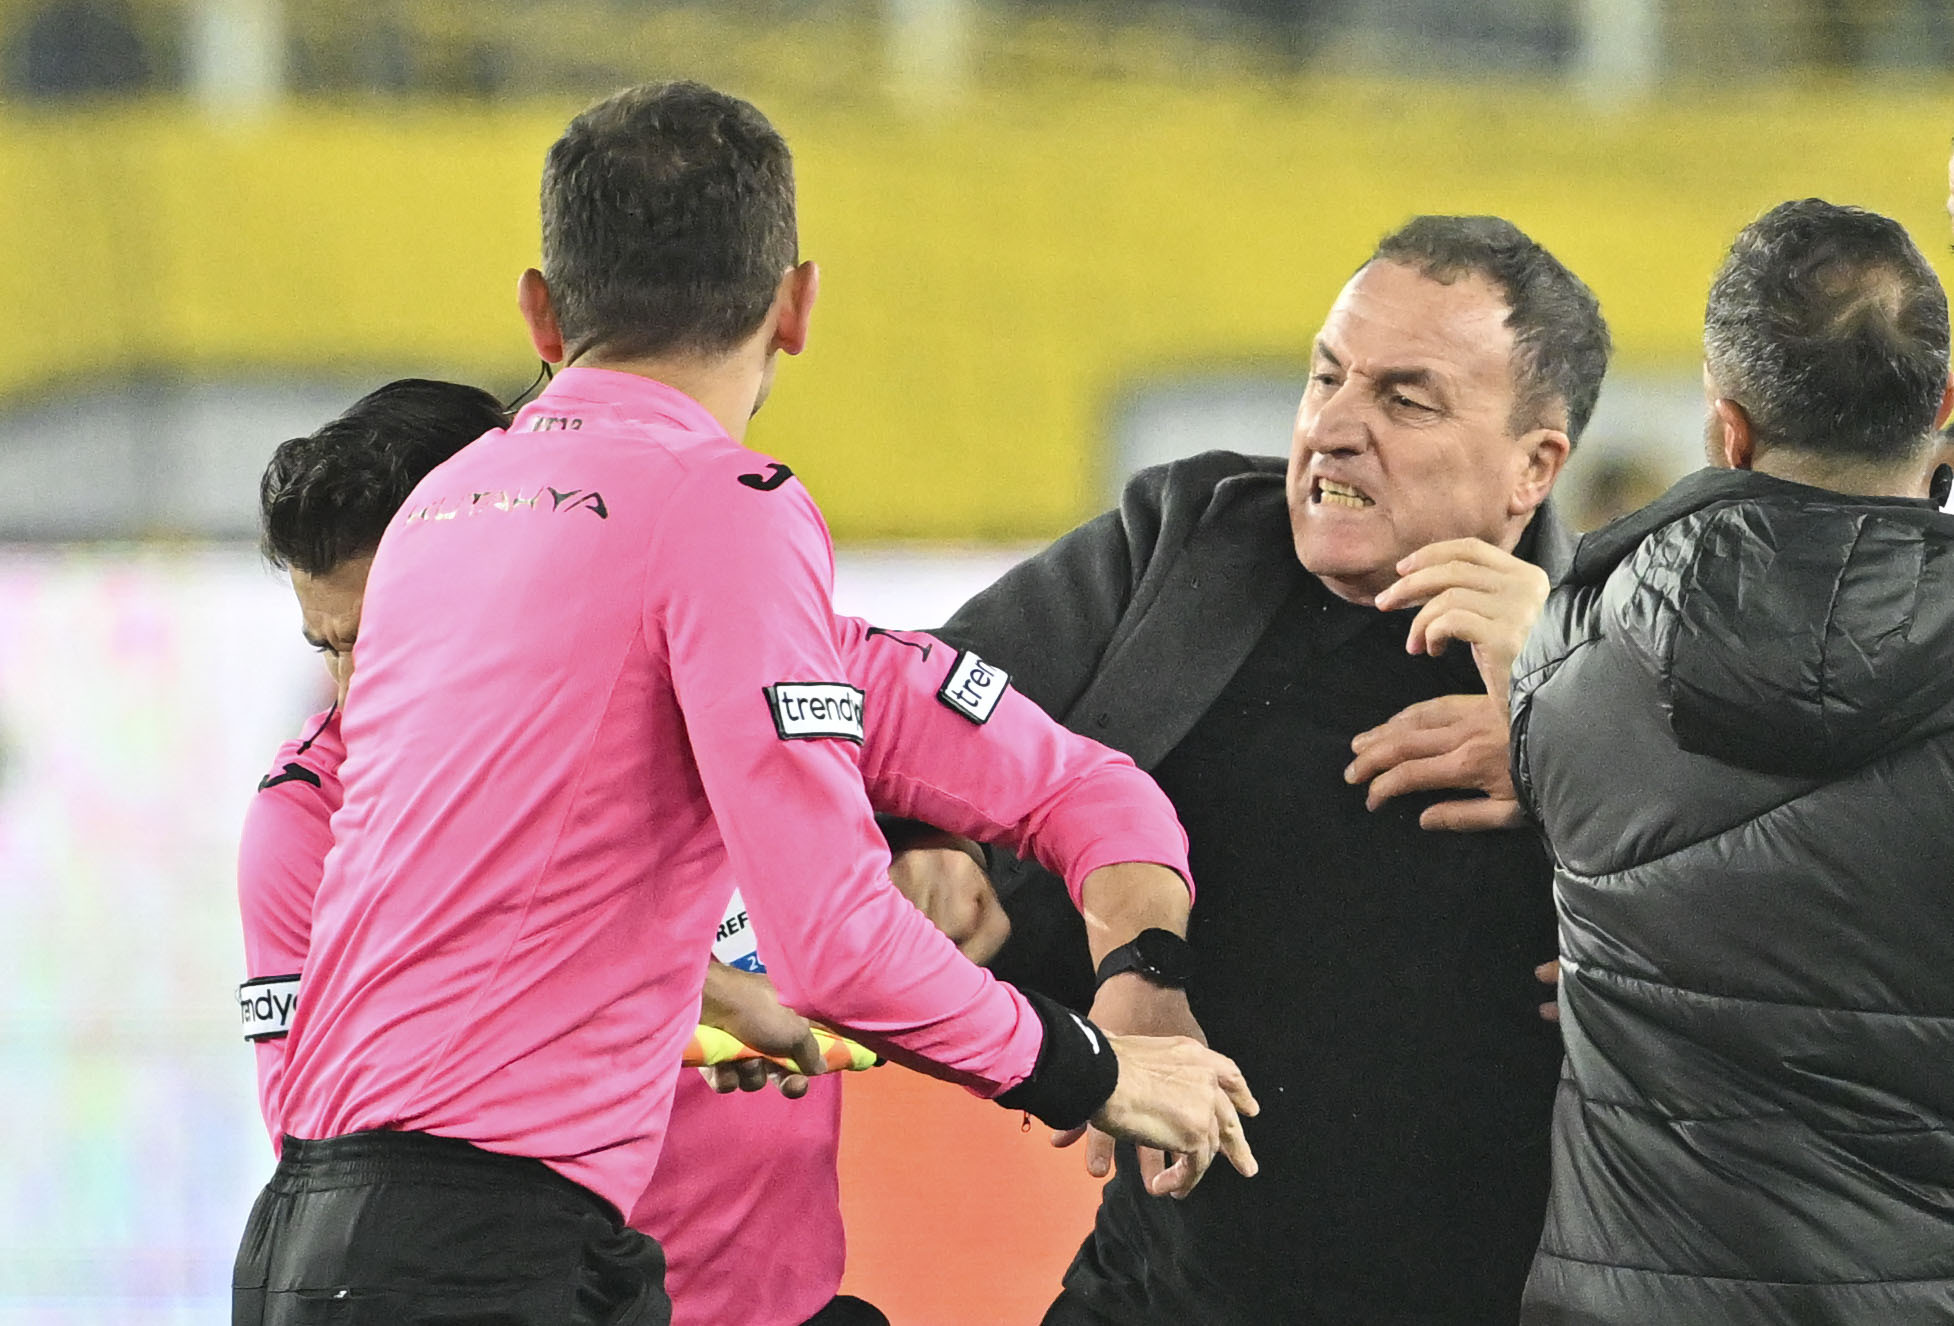 Koca wurde vom türkischen Fußballverband mit einer lebenslangen Sperre belegt